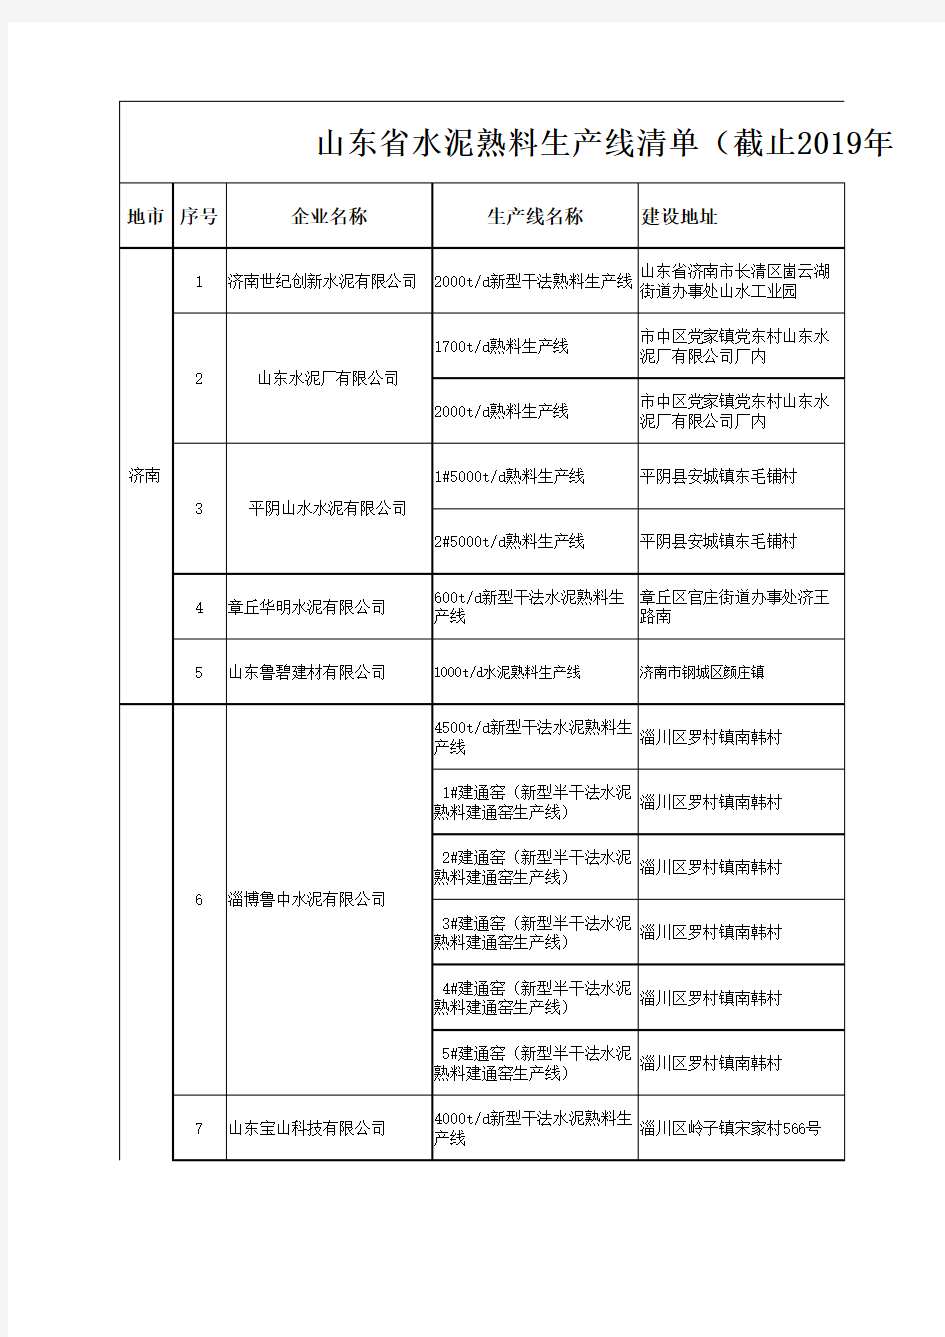 山东省水泥熟料生产线清单(截止2019年12月31日)